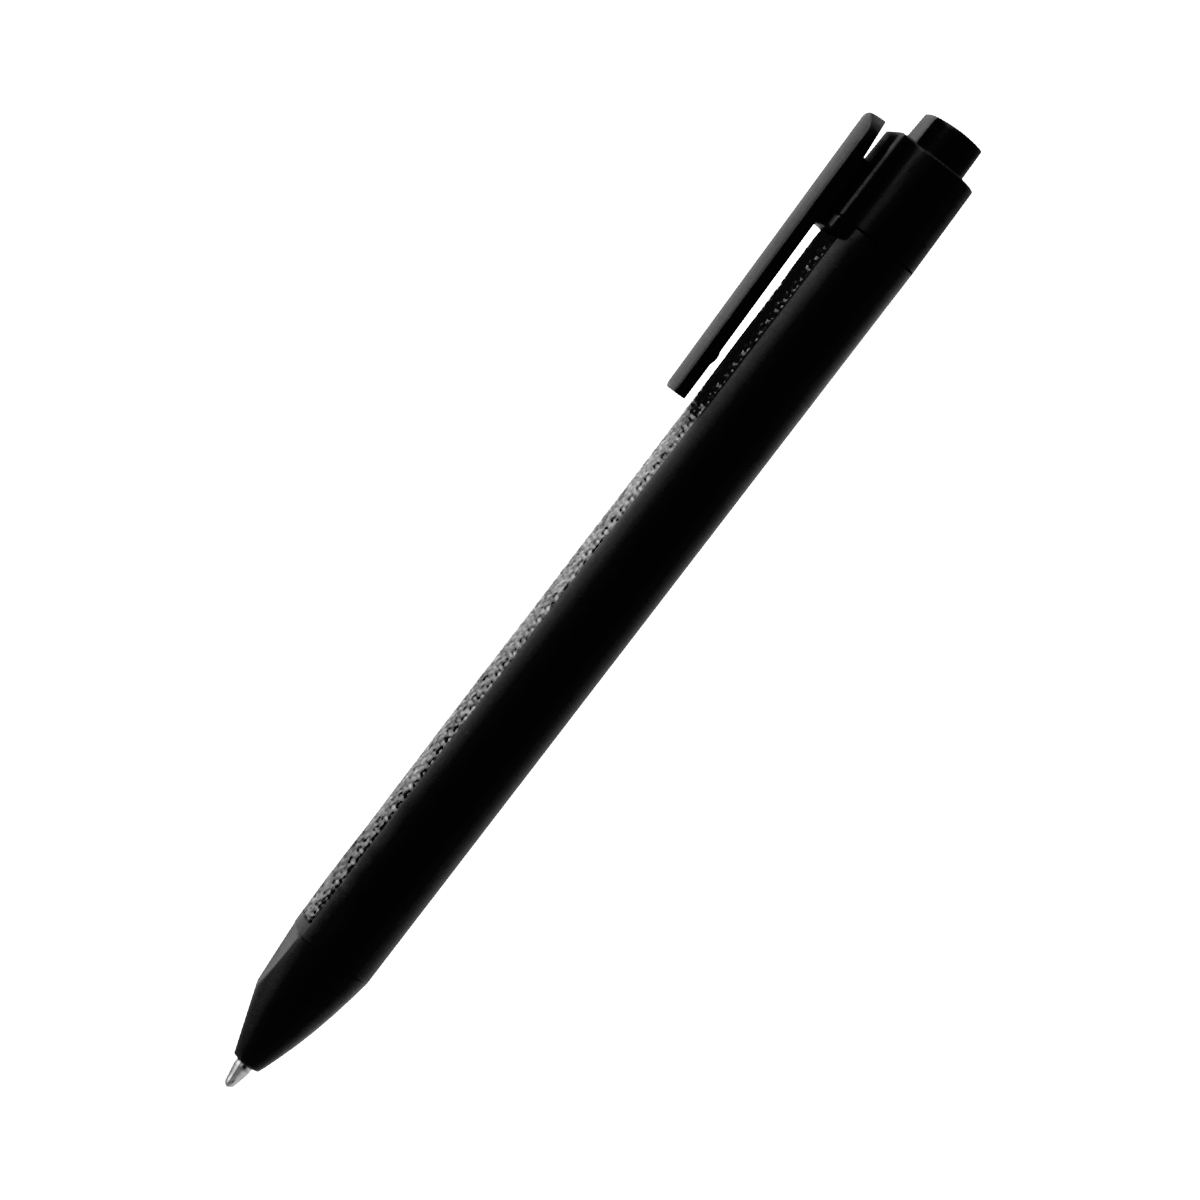 Ручка пластиковая с текстильной вставкой Kan, черная (Фото)